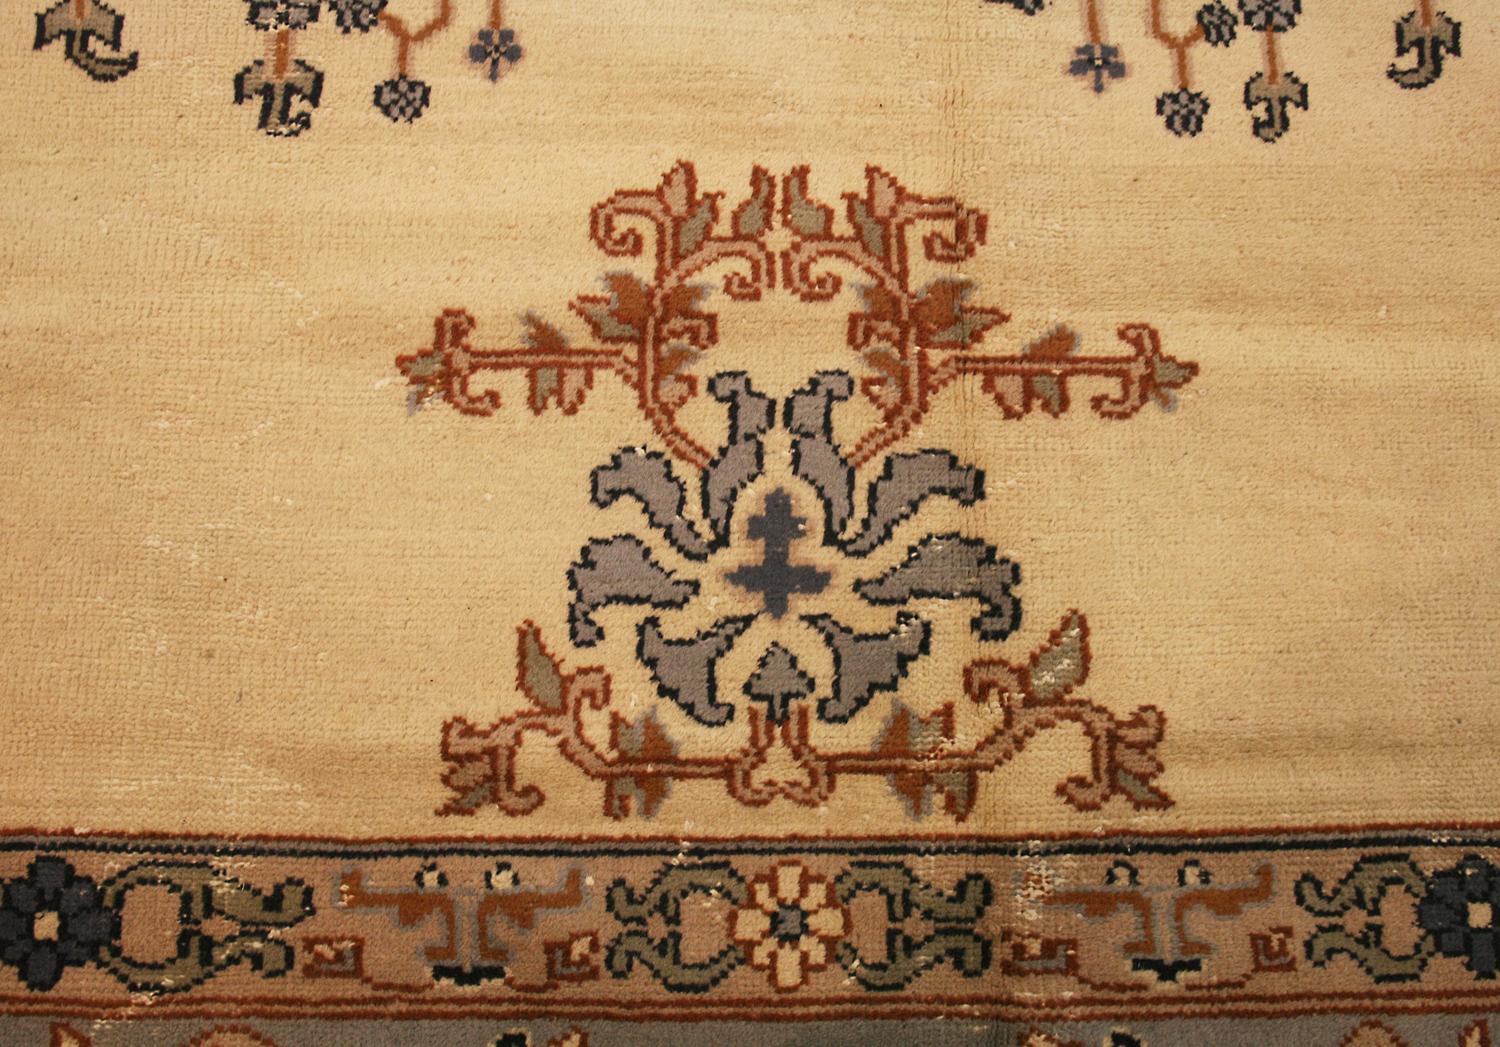 1920 carpet